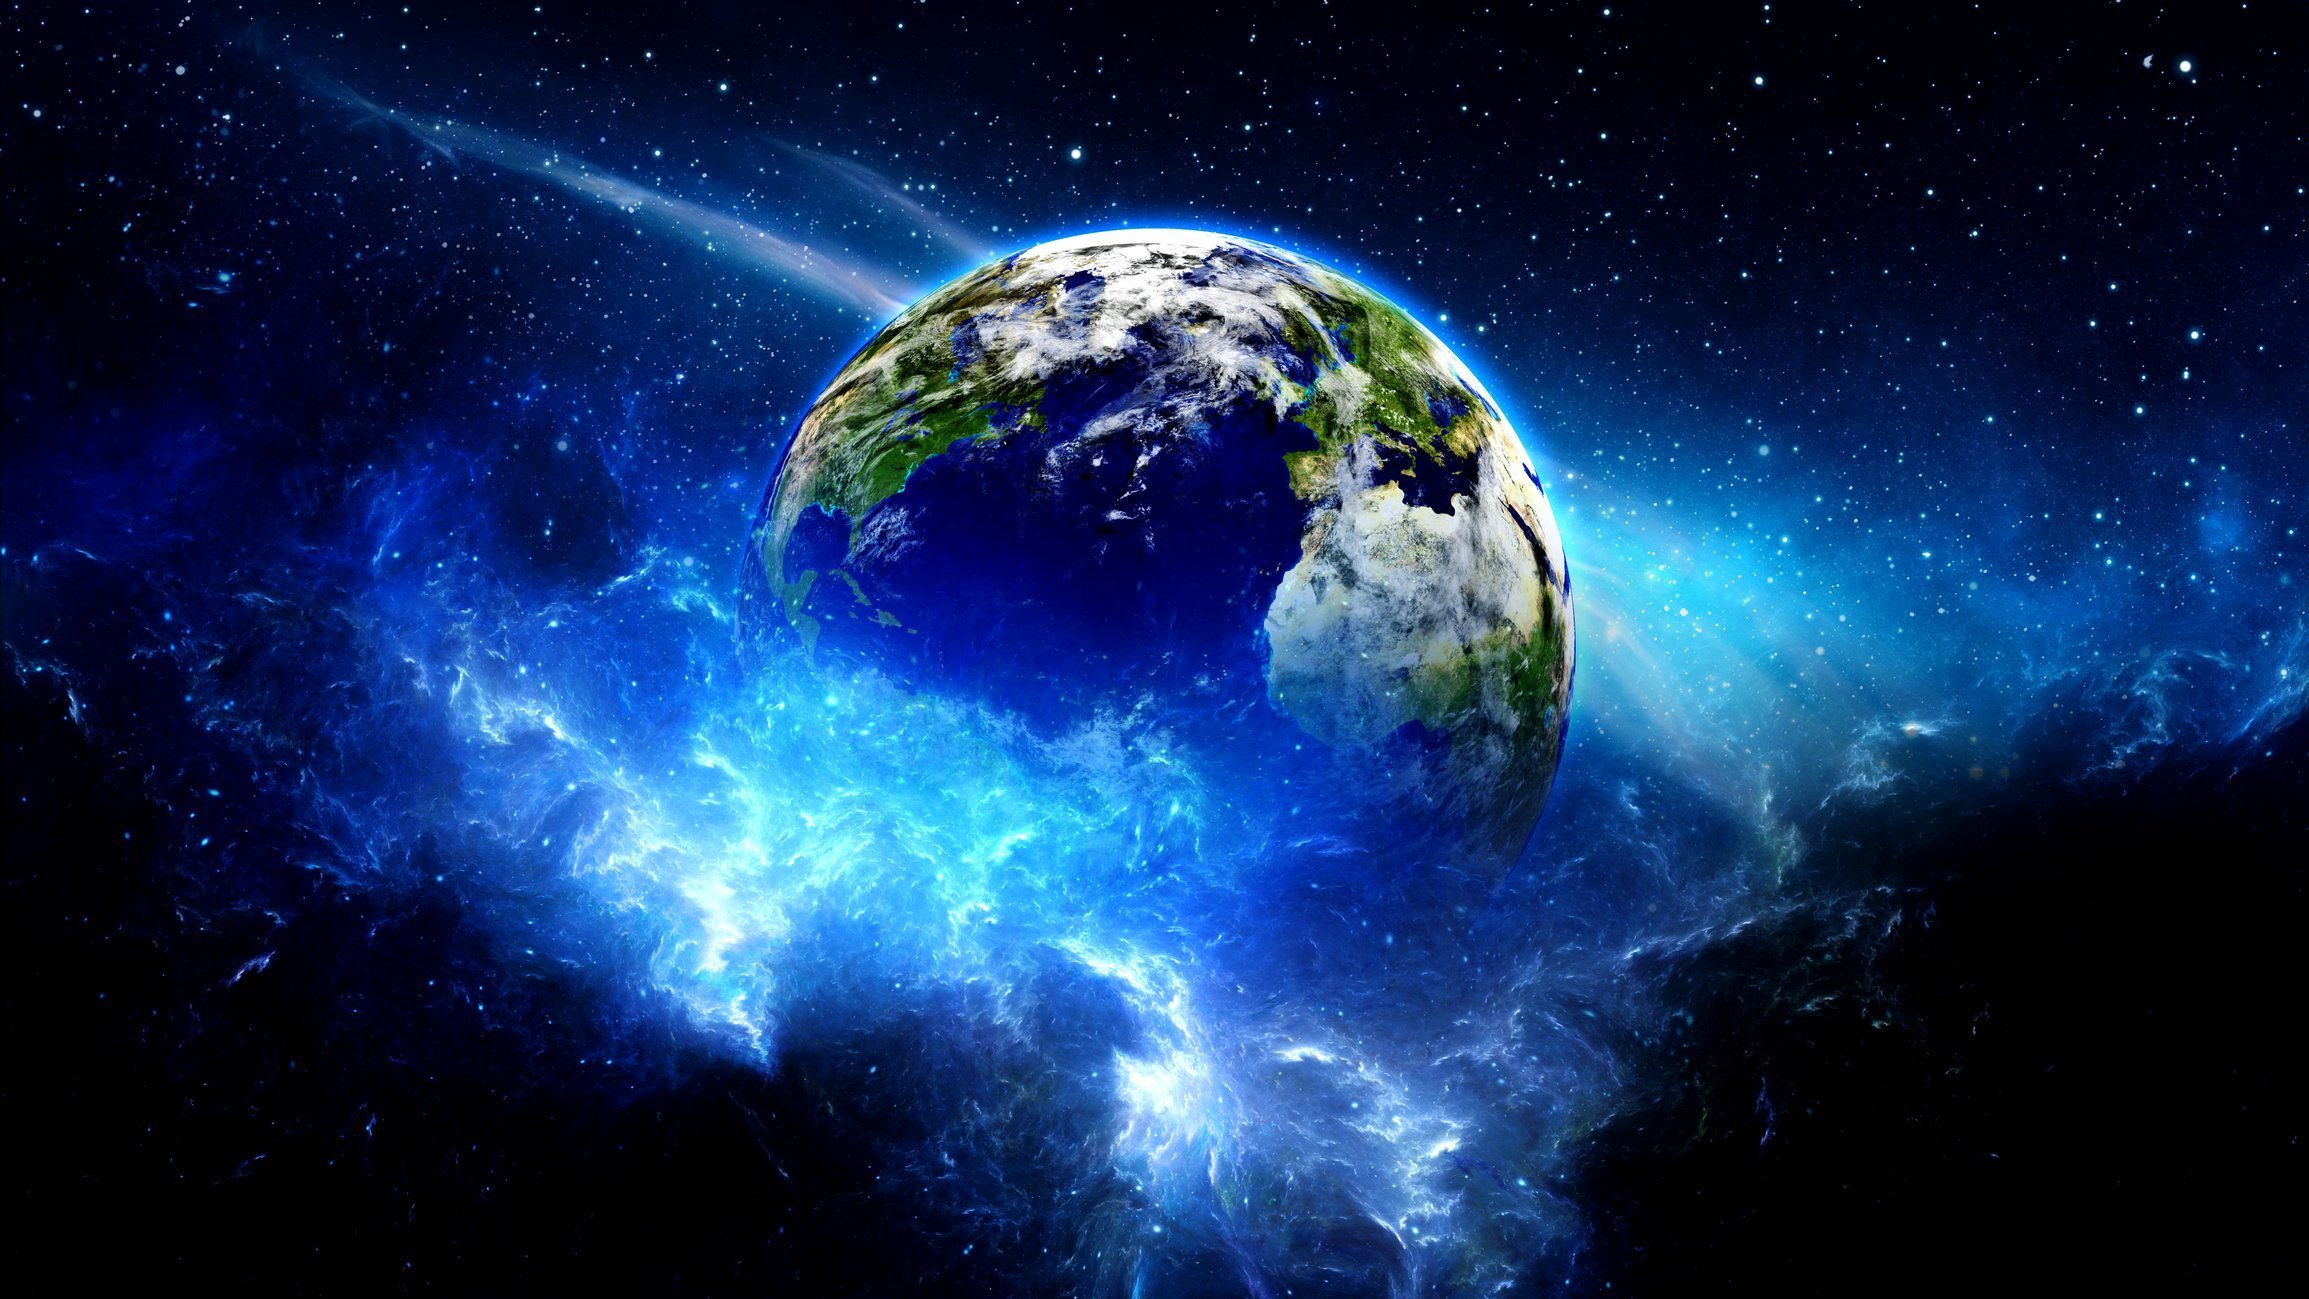 Картинка планета земля из космоса. Планета земля. О земле и космосе. Планета земля в космосе. Земной шар в космосе.